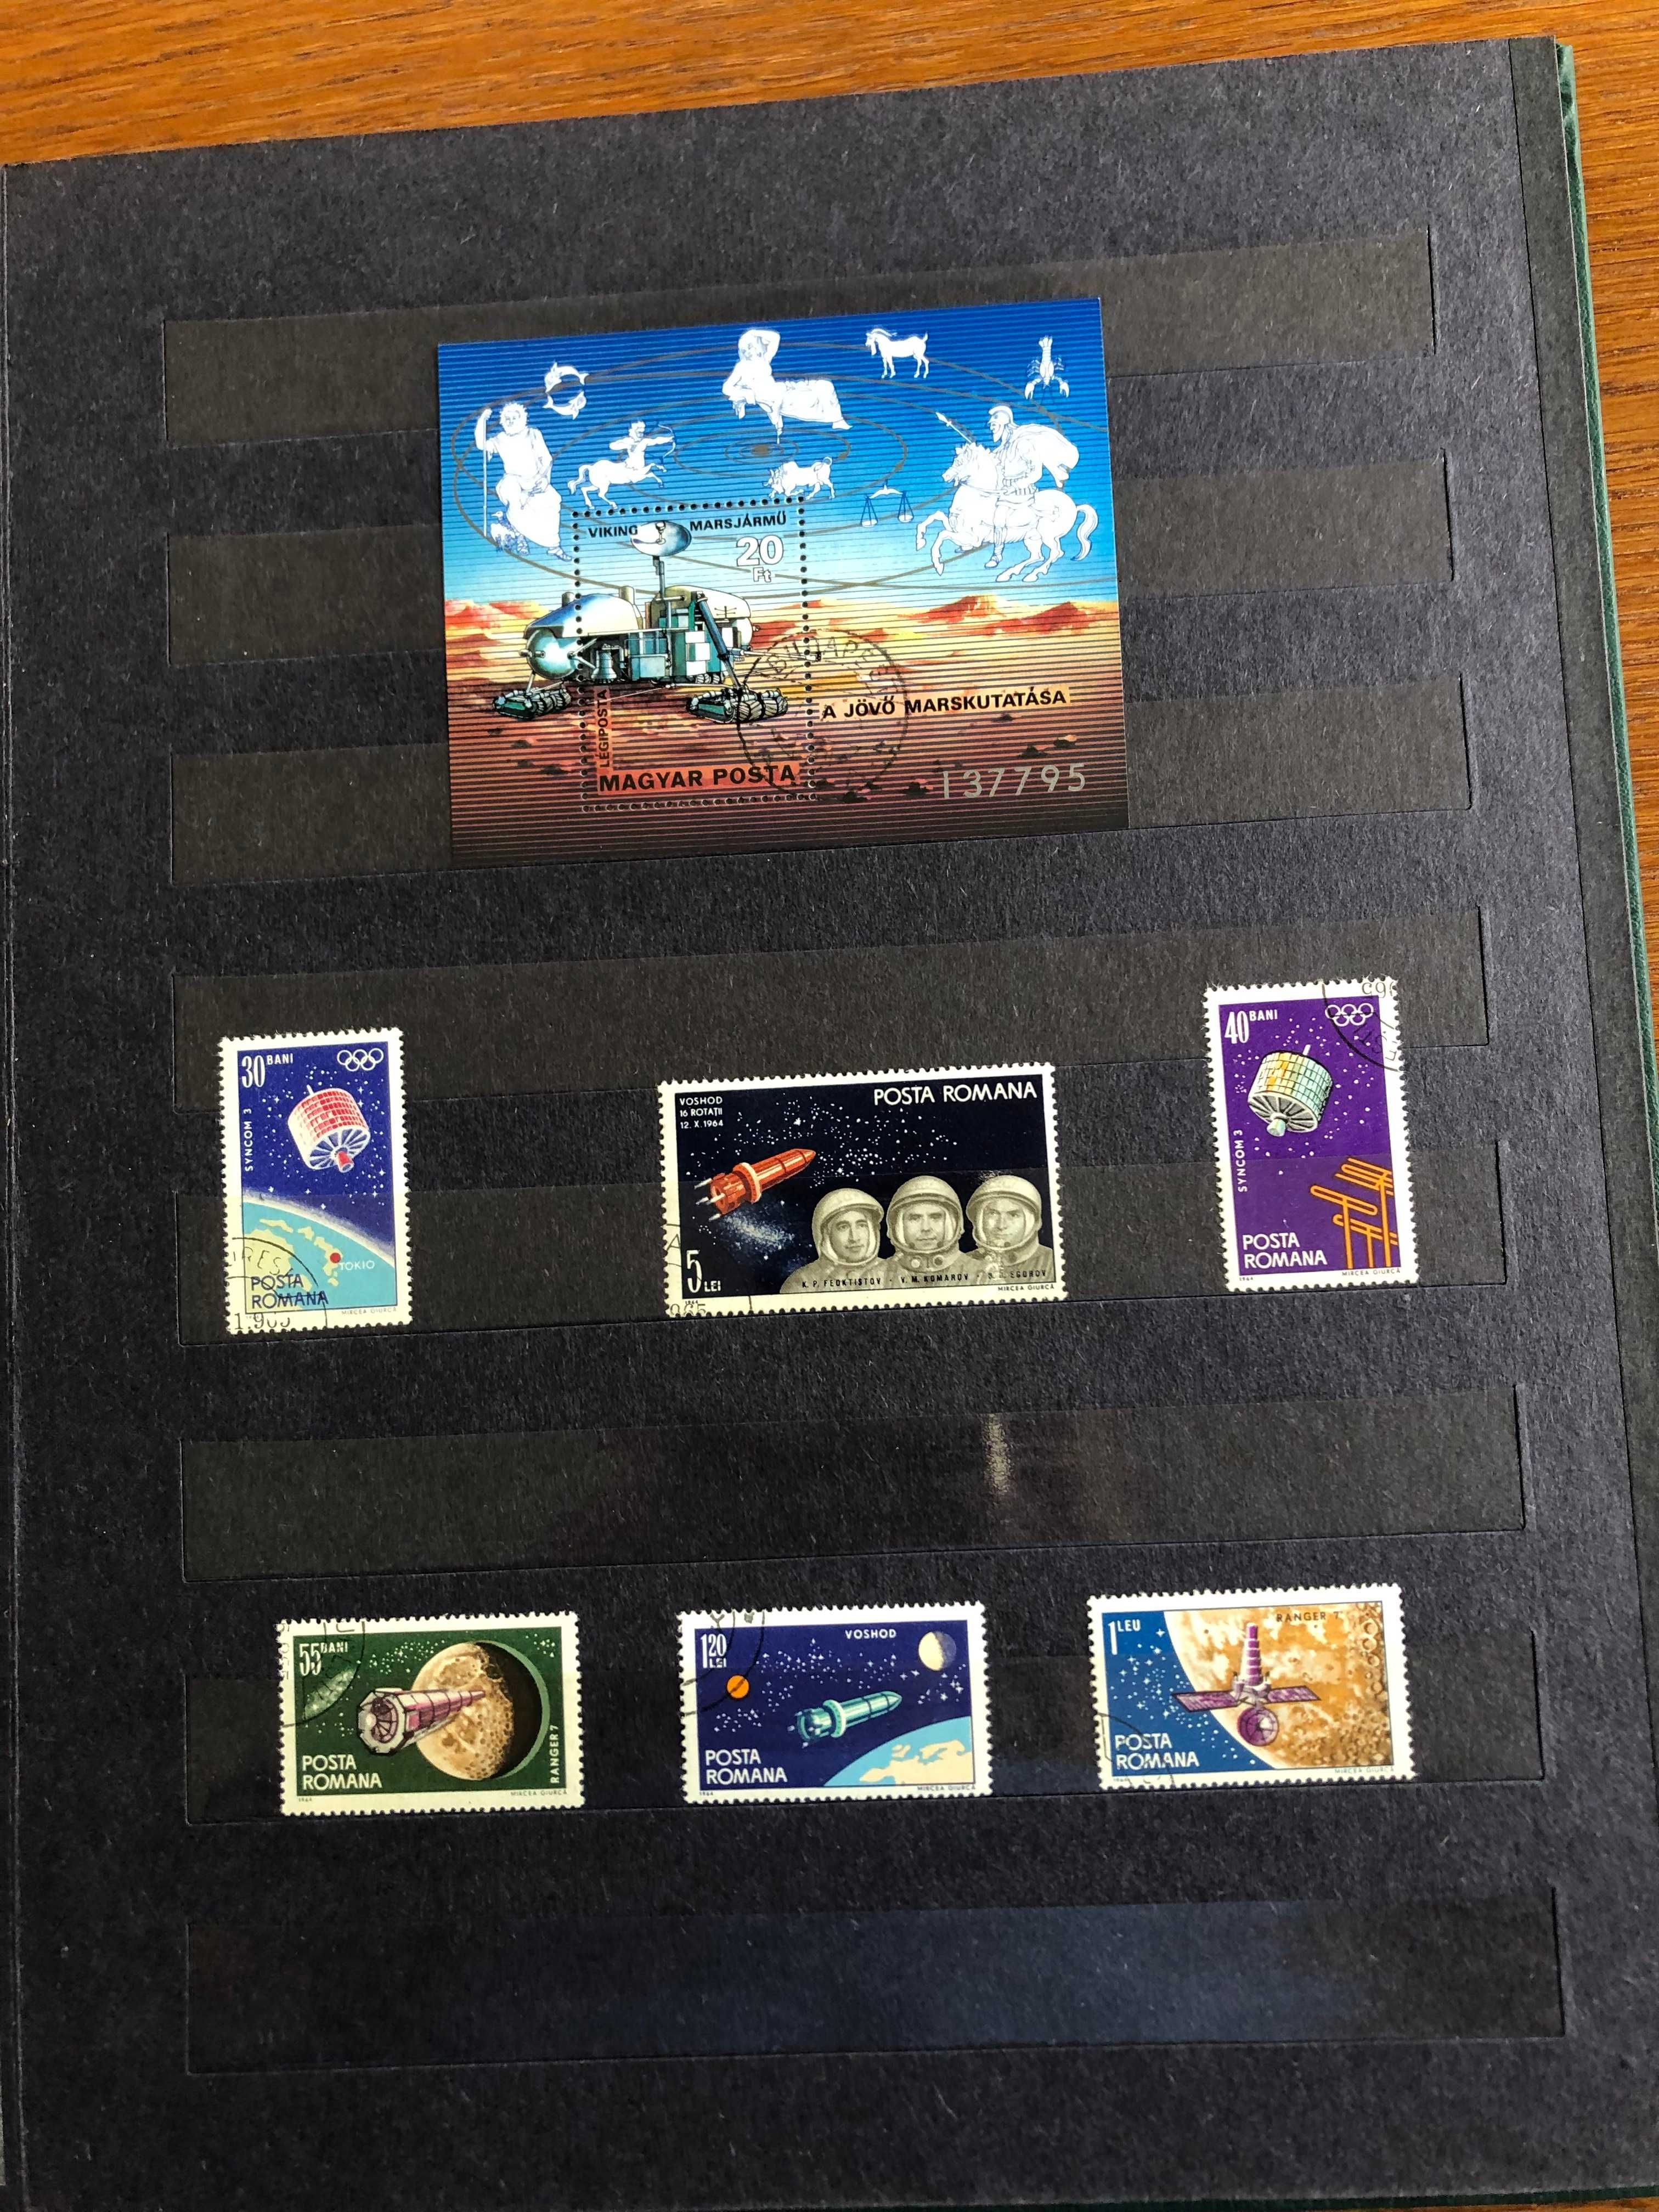 Duży klaser ze znaczkami o tematyce kosmos